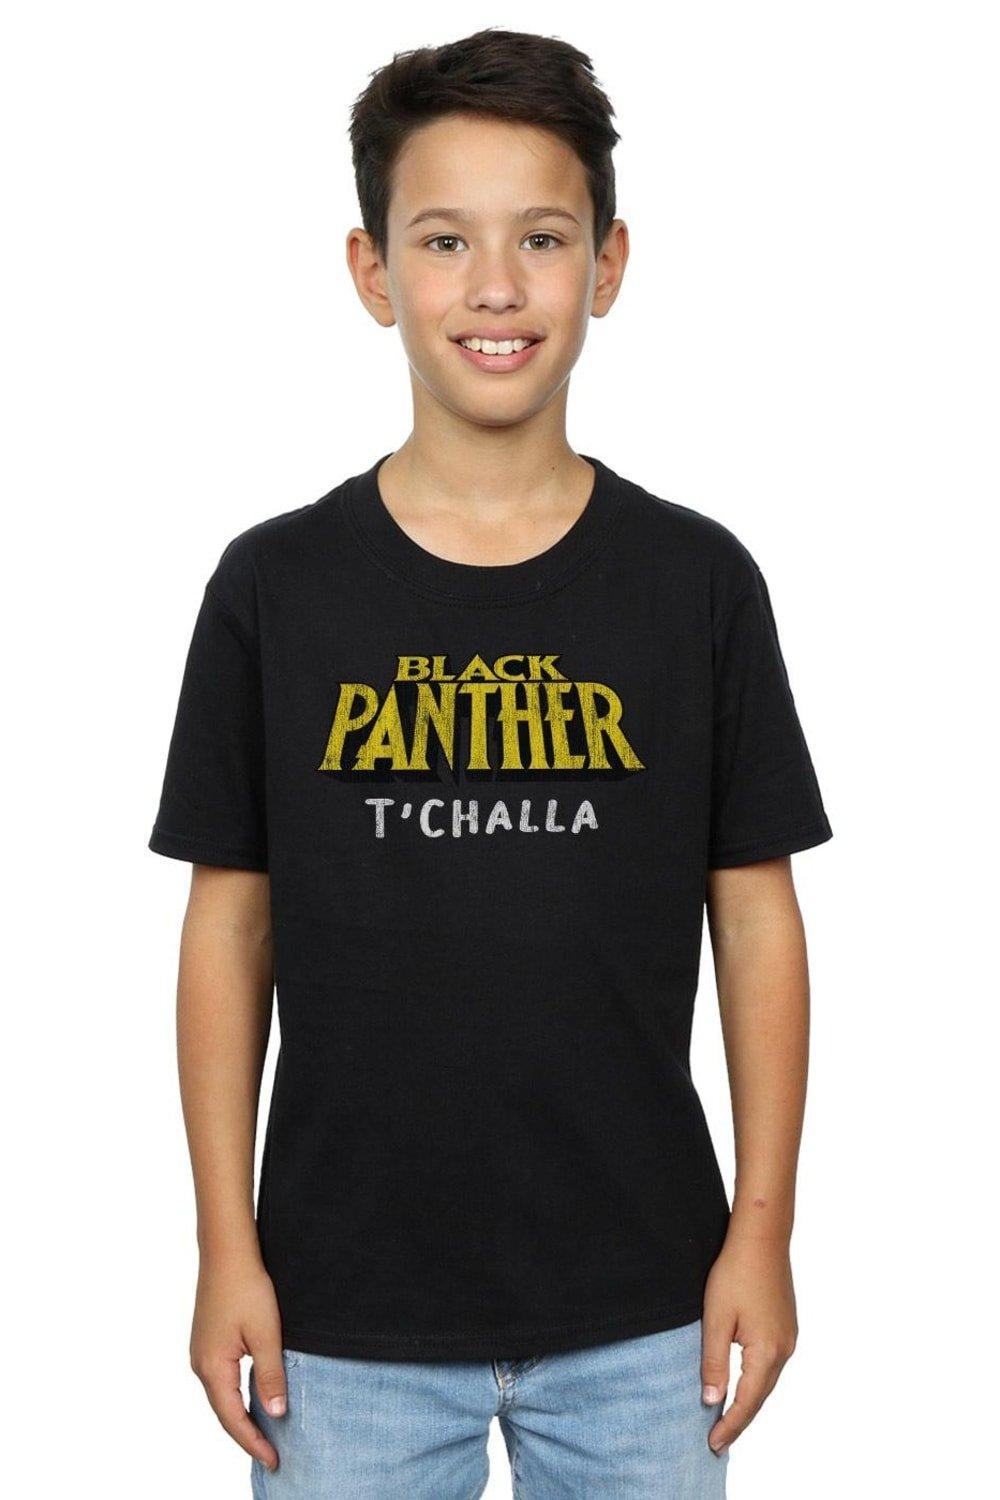 Black Panther AKA T’Challa T-Shirt